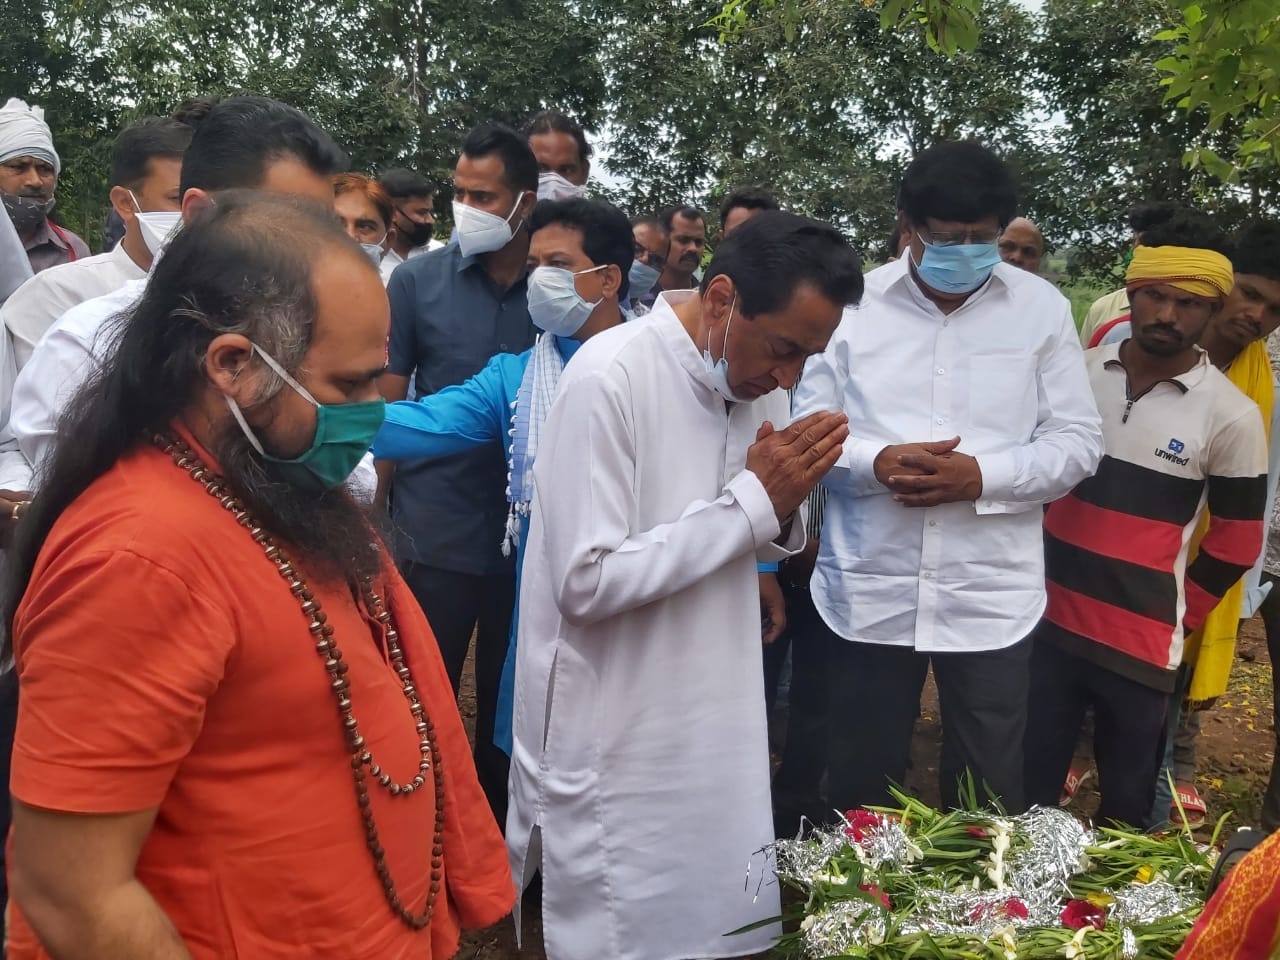 बट्टी परिवार के बीच पहुंचे नकुल- कमलनाथ, आदिवासी नेता की असमय मृत्यु पर जताया गहन शोक | New India Times